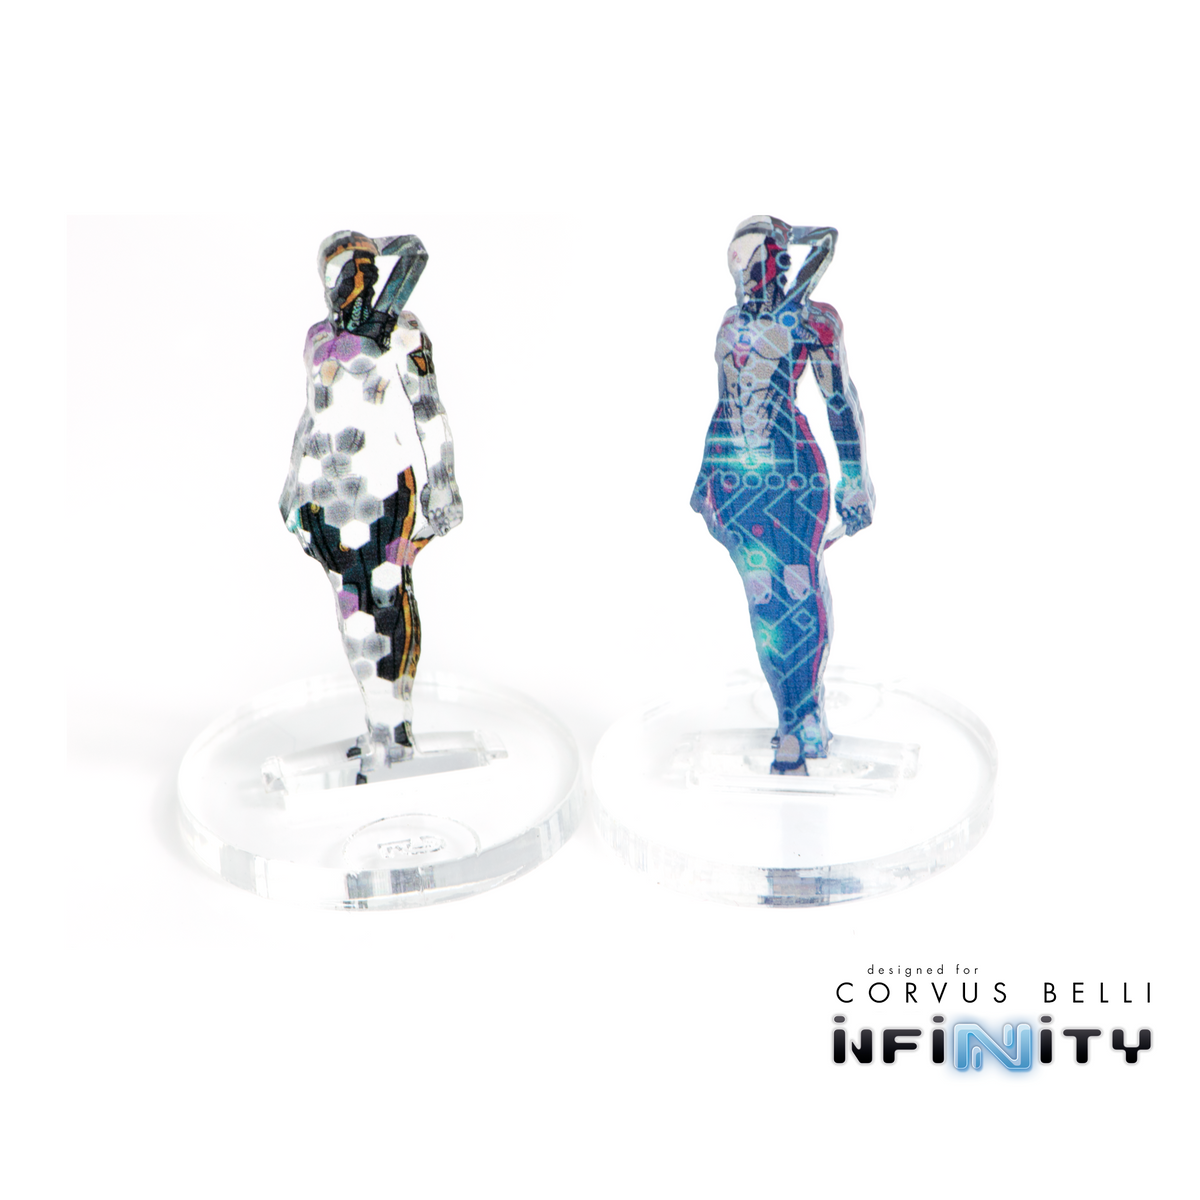 Marcadores 3D Infinity: Ninja (25 mm Camo -6, Cybermask)